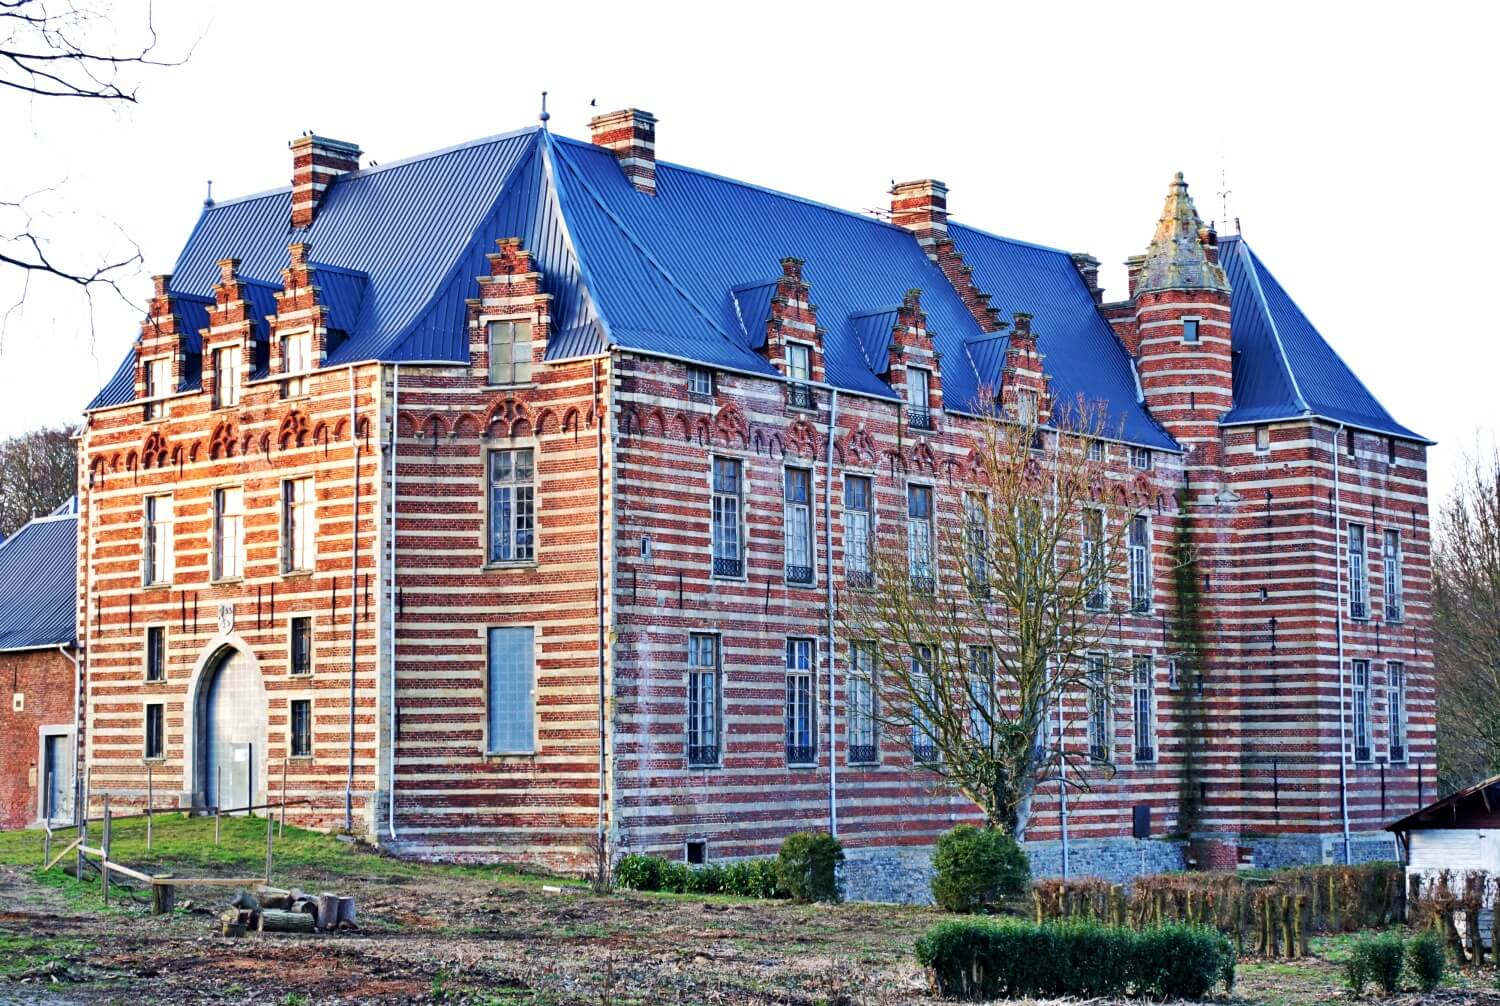 Heers Castle
